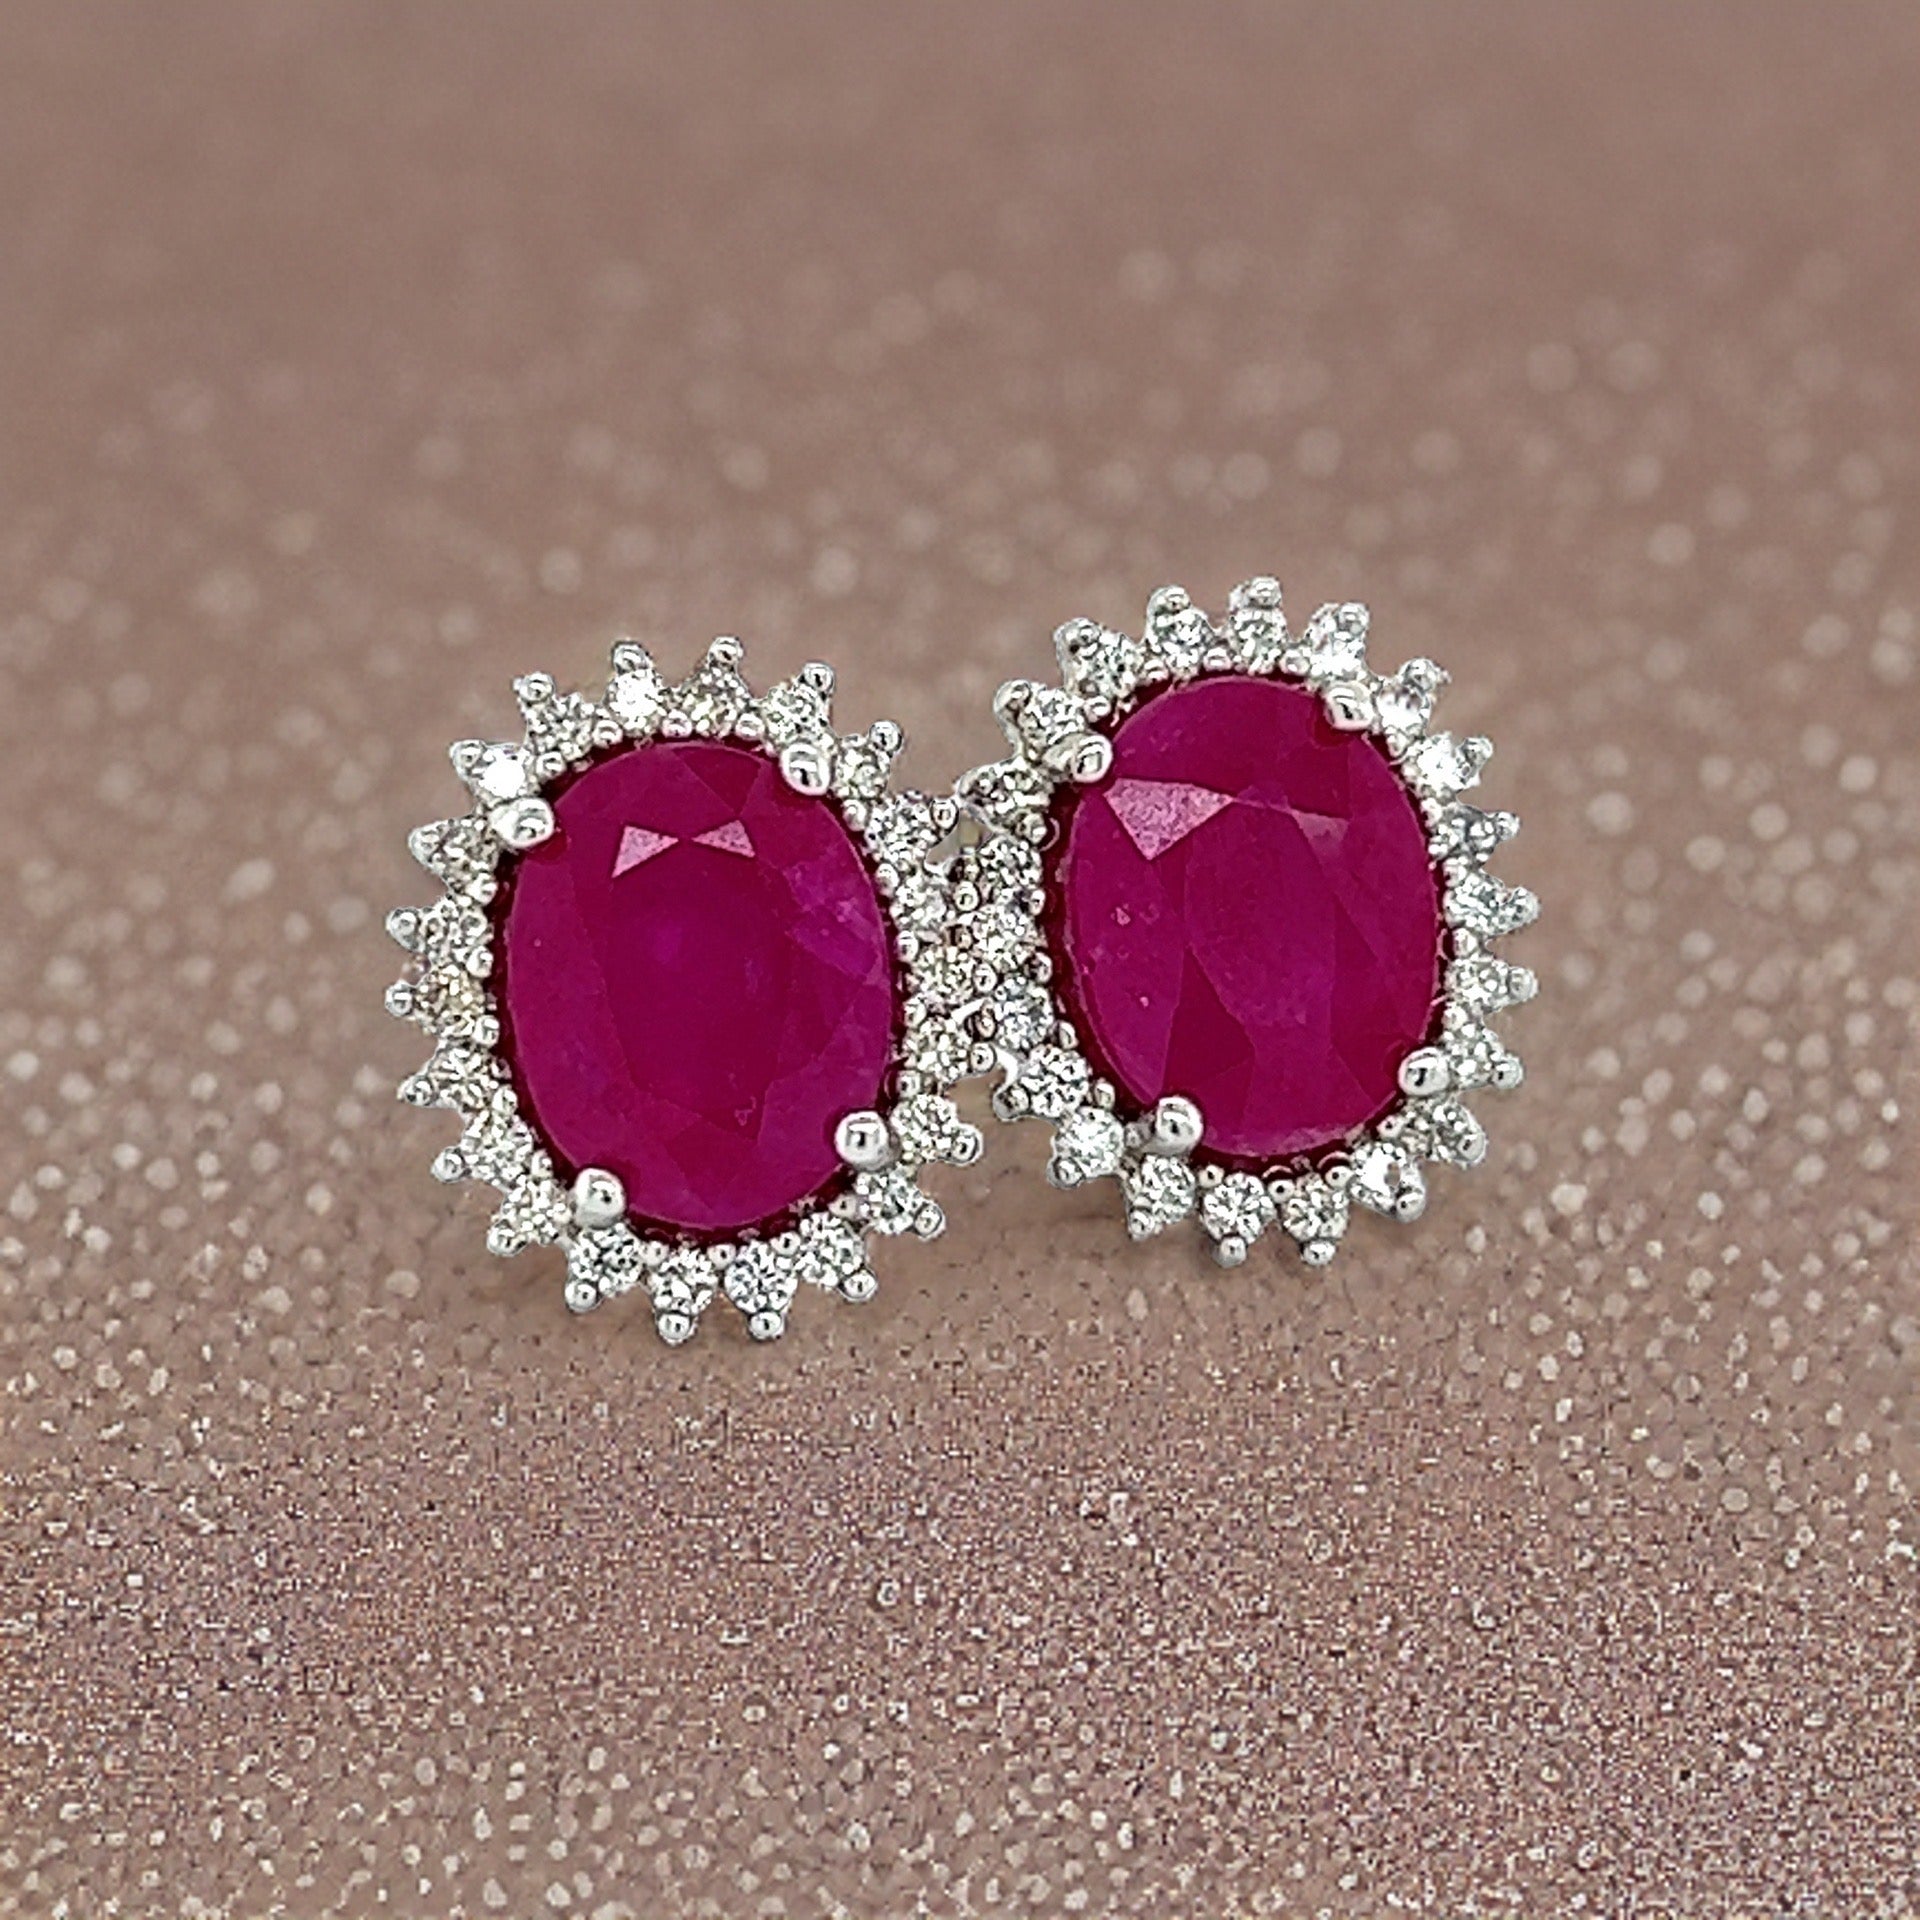 Natural Ruby Diamond Stud Earrings 14k W Gold 5.74 TCW Certified $5,175 211889 - Certified Fine Jewelry